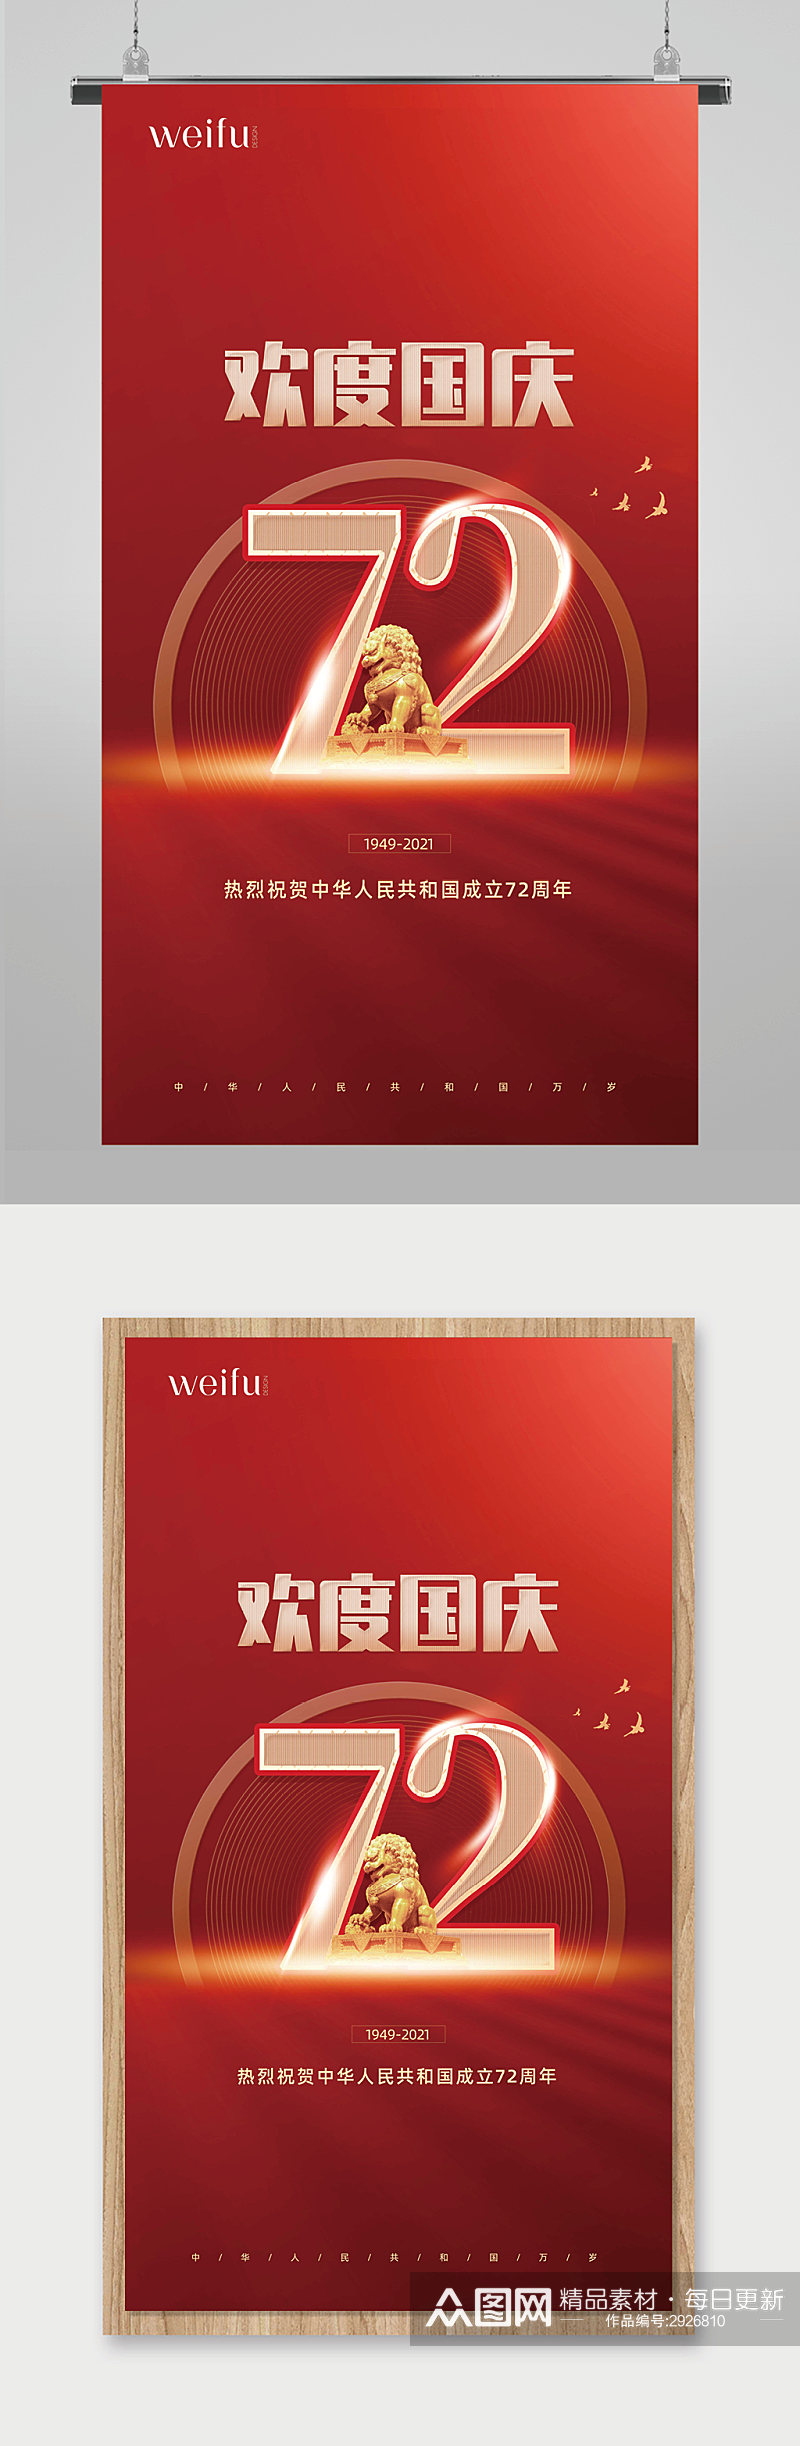 红色大气简约欢度国庆国庆节72周年海报素材